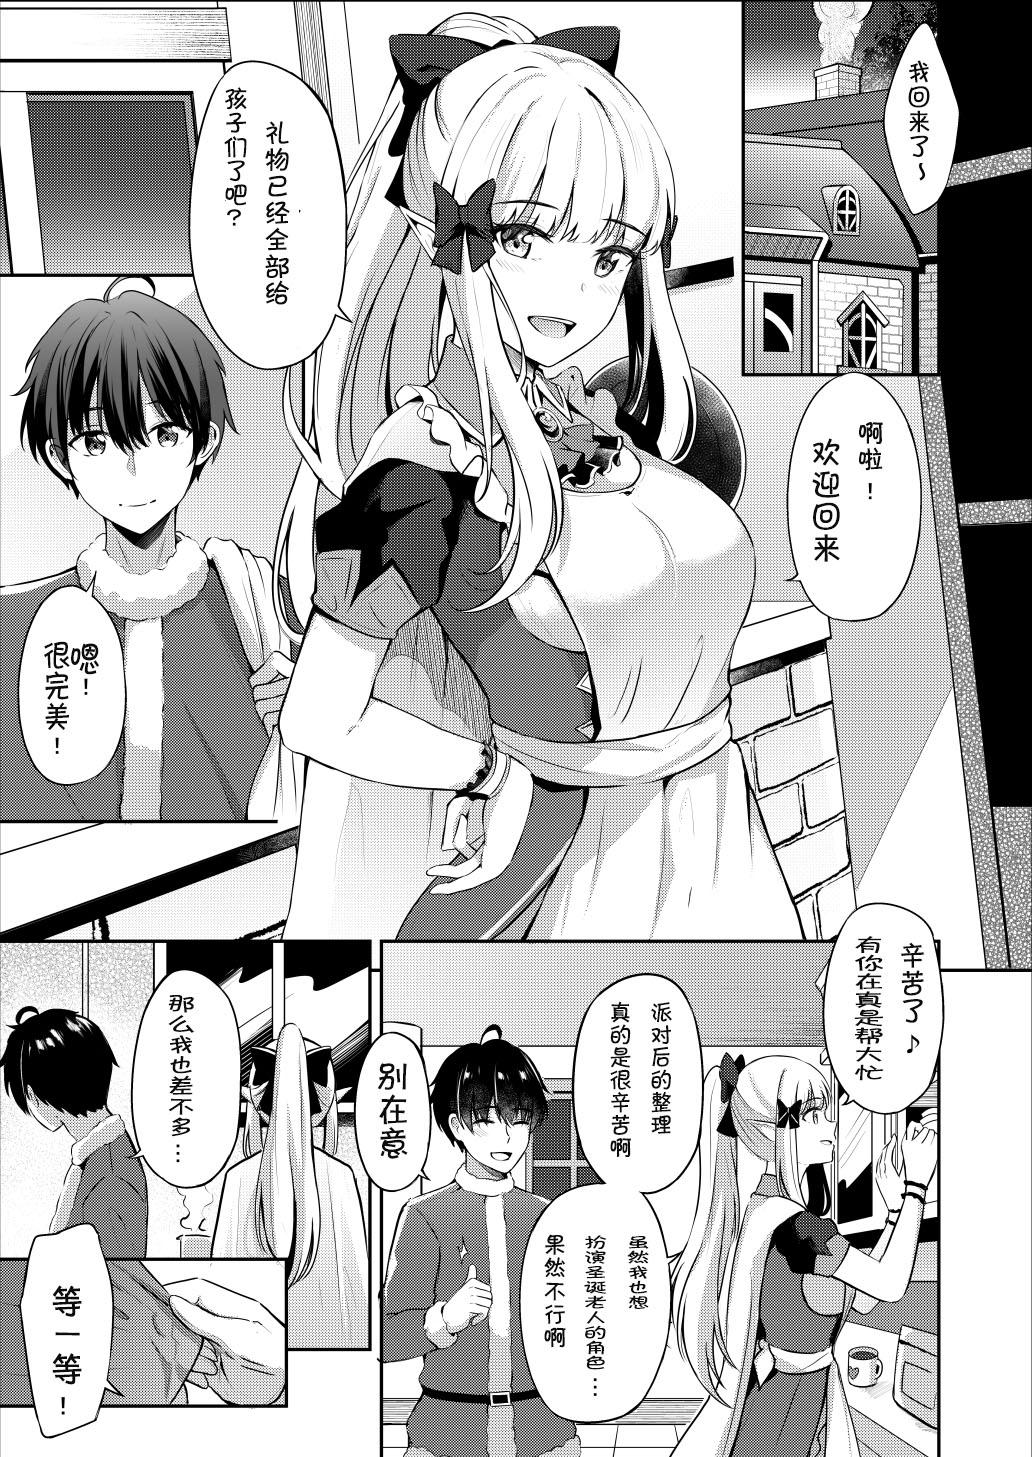 Masturbacion Saren no Tanoshii Yume - Princess connect 18 Year Old - Page 4